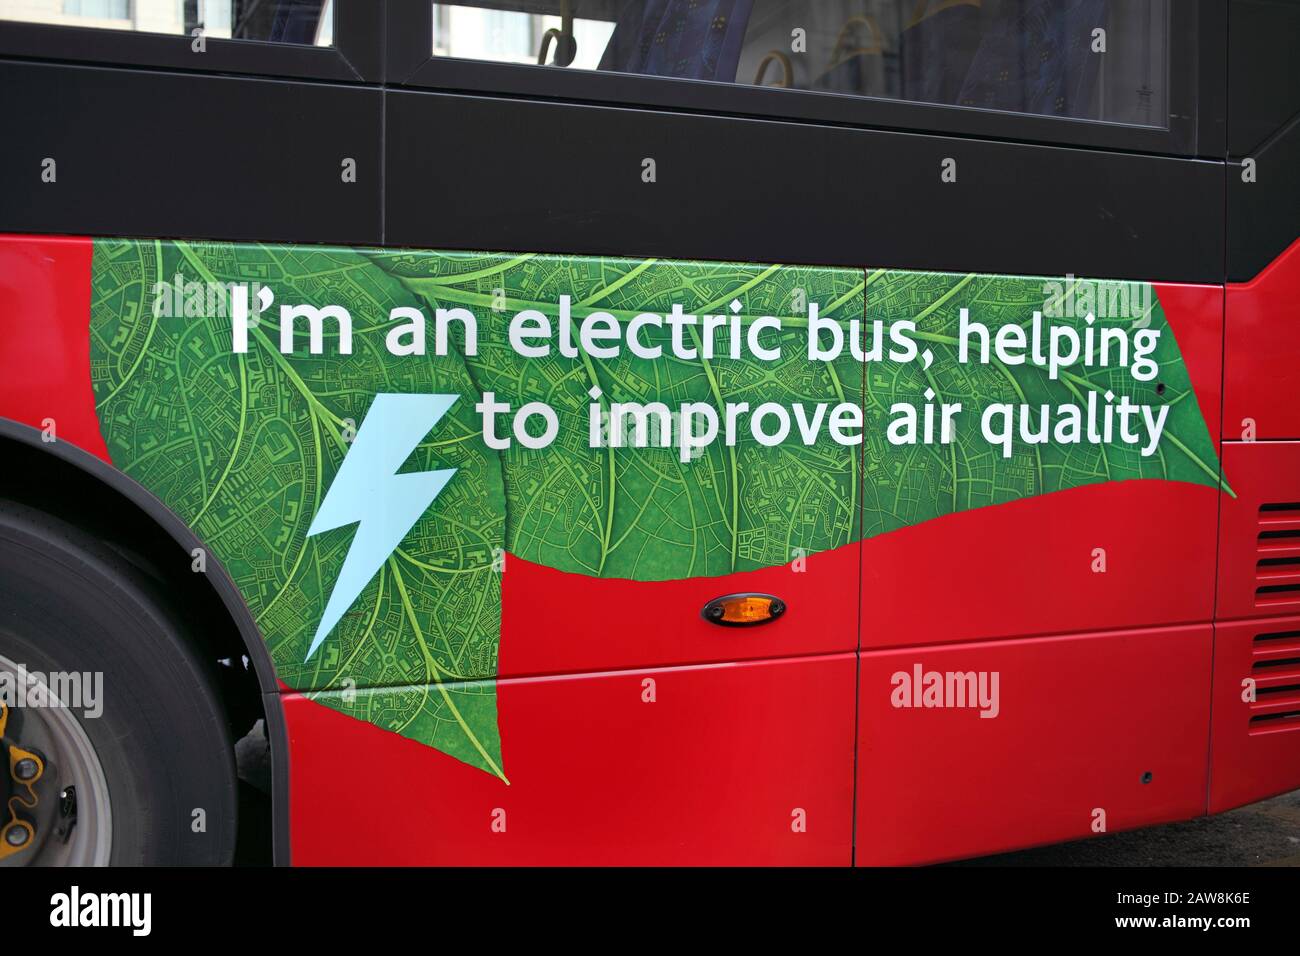 Pubblicità sul lato di un autobus elettrico a Londra, pubblicizzando il suo ruolo nel migliorare la qualità dell'aria. Lancaster Place, Londra. Foto Stock